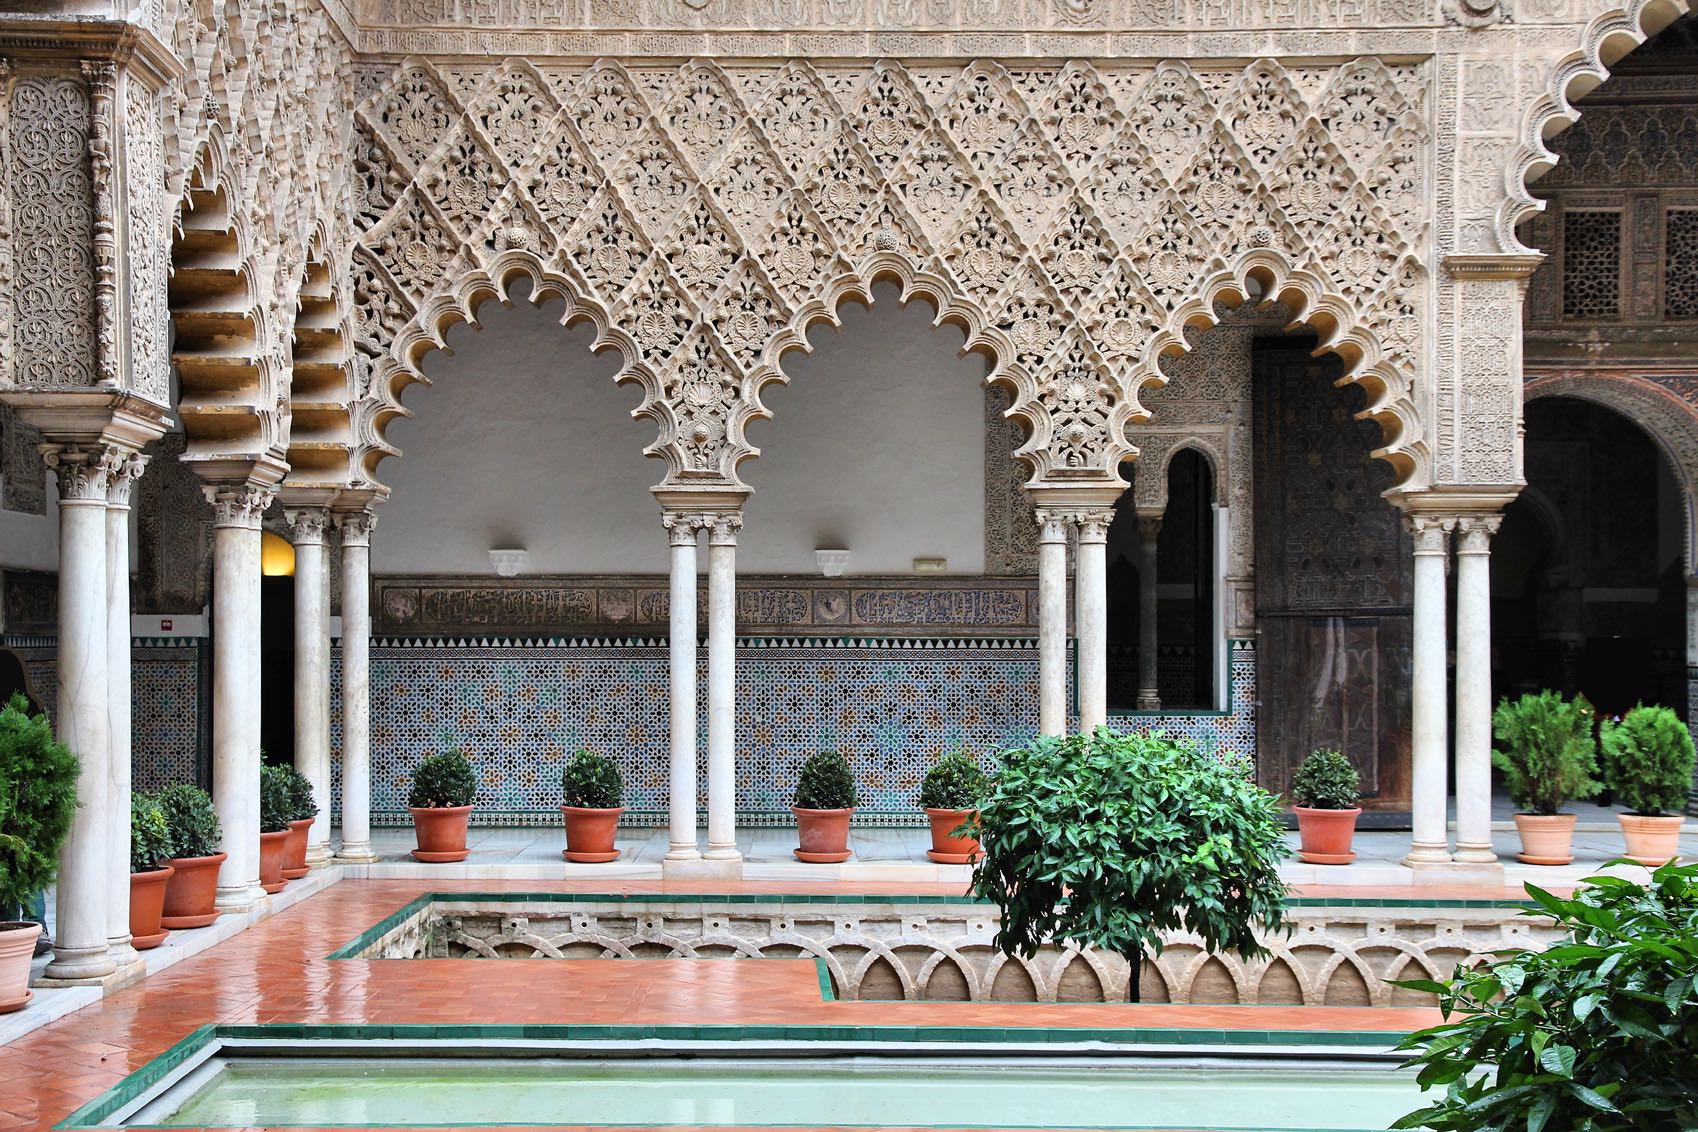 2. Alcázar, Seville